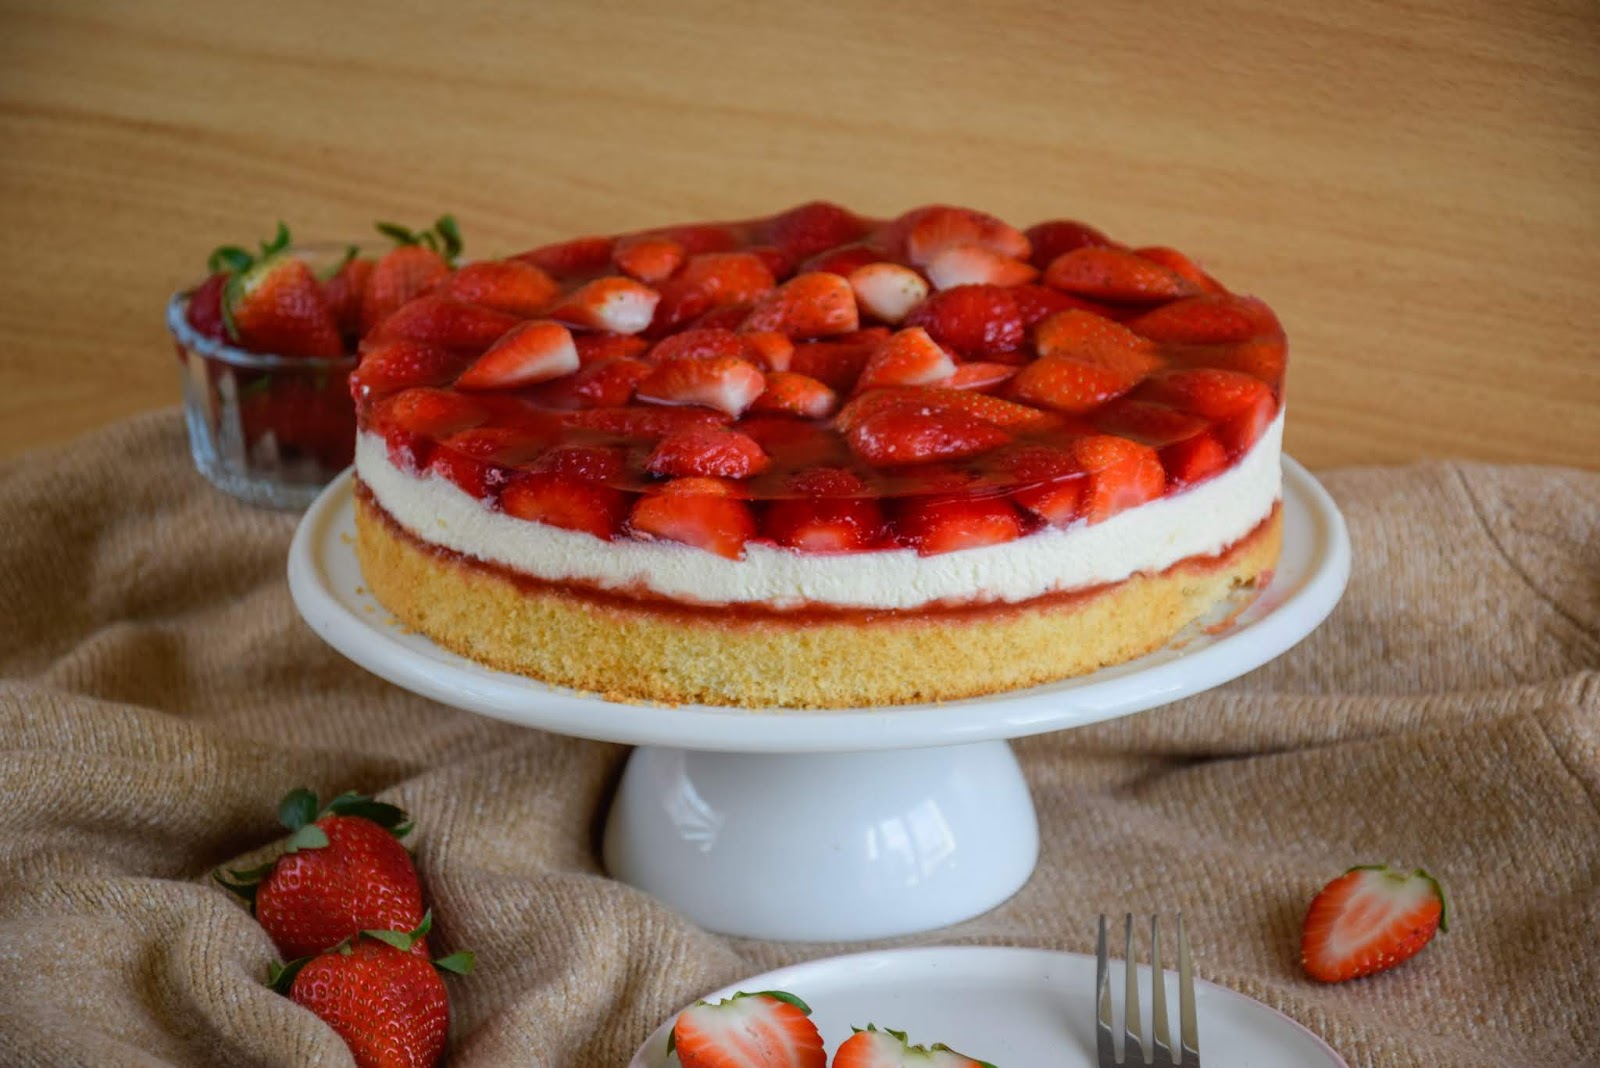 kiras_bakery: Erdbeer-Torte/ klassische Erdbeer-Sahne Torte